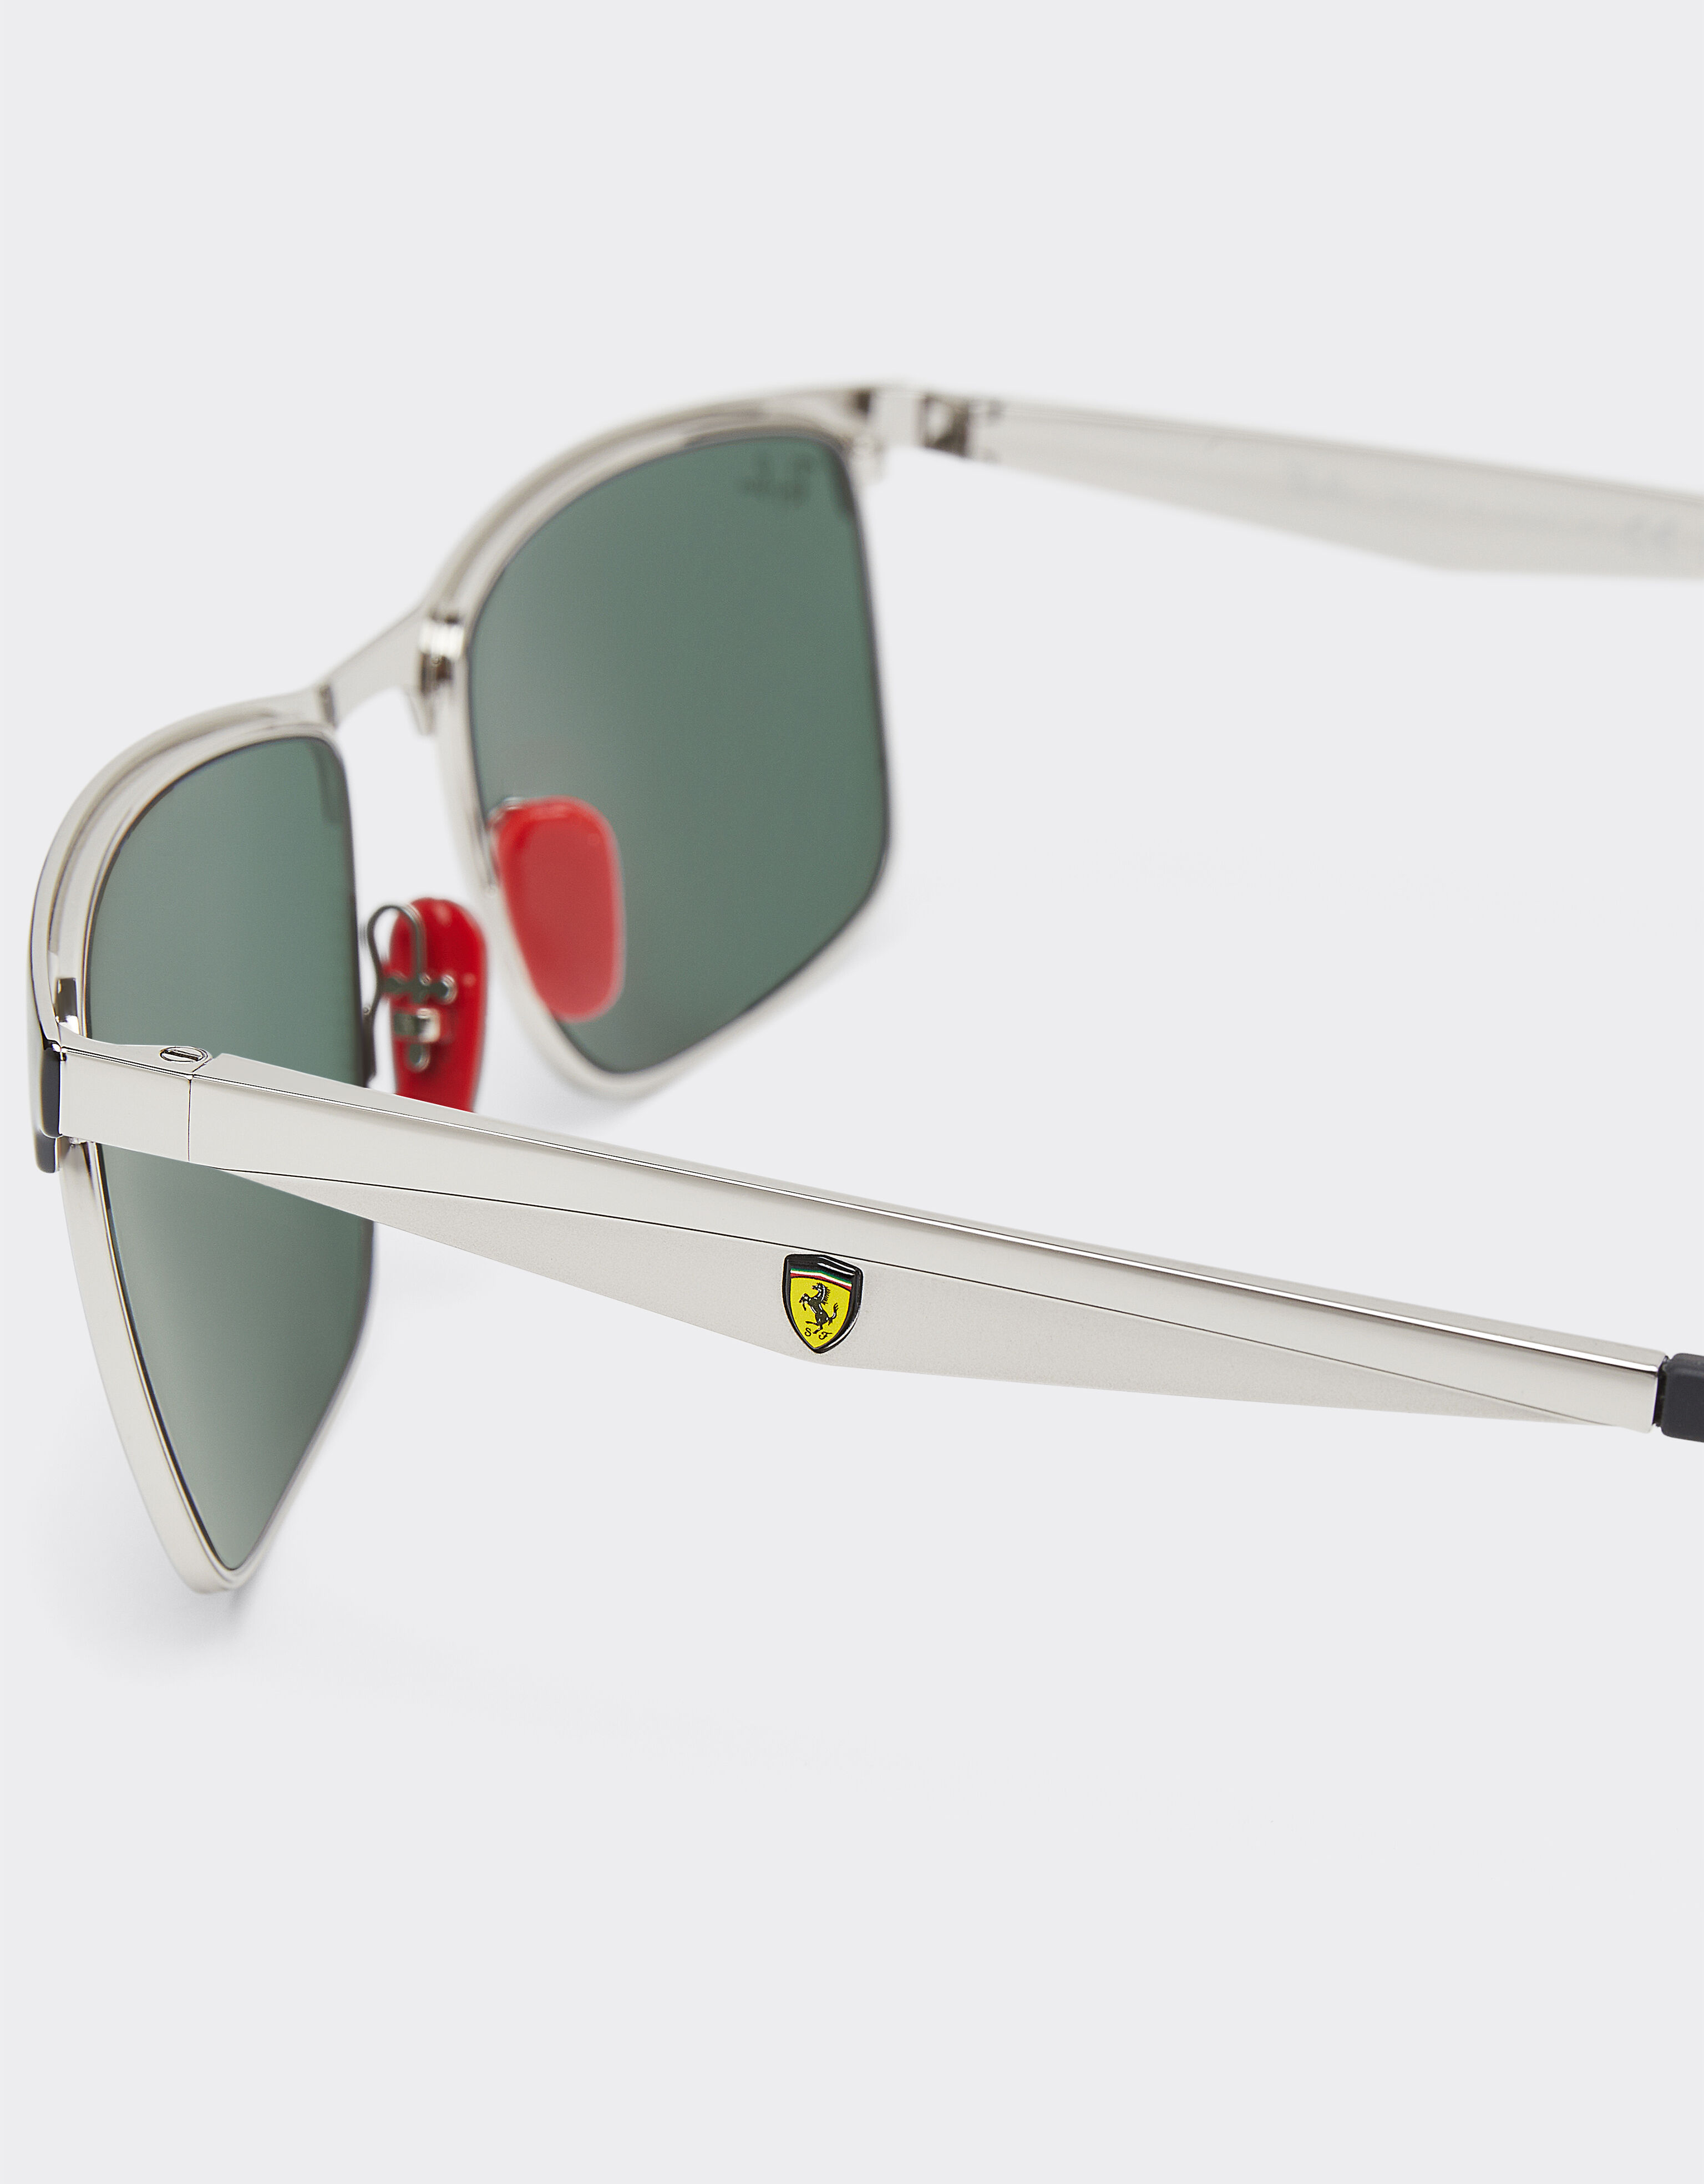 Ferrari Ray-Ban for Scuderia Ferrari RB3726MF black and silver with dark green lenses Silver F1030f